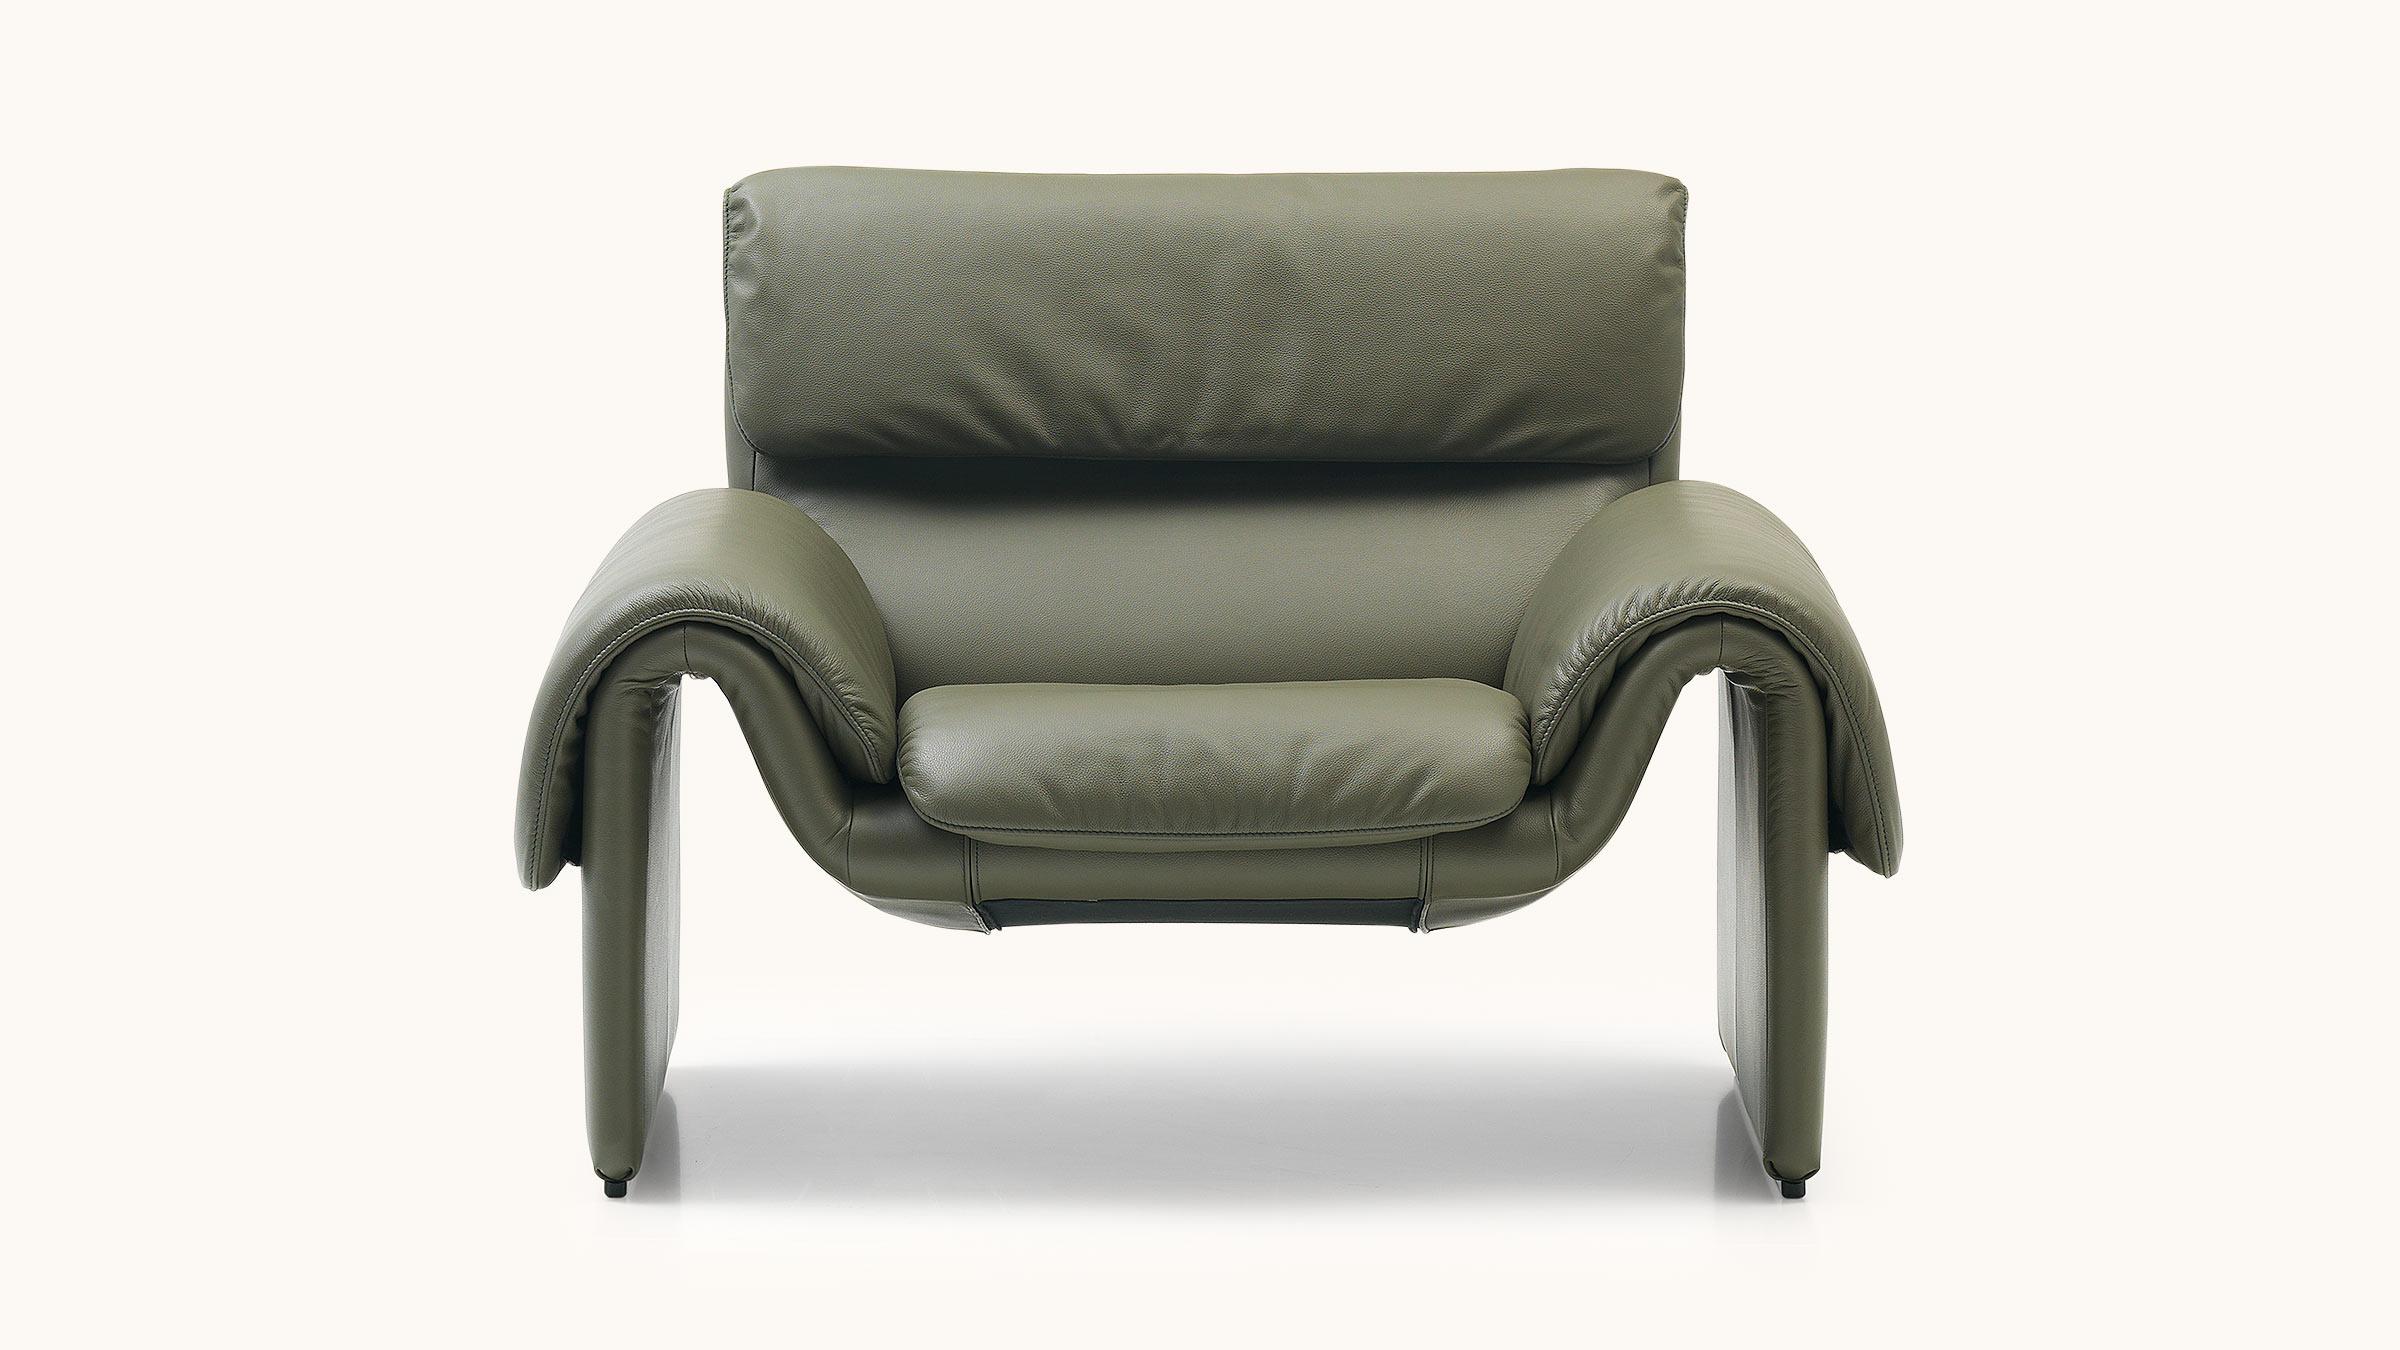 Avec ses formes fluides et courbes, le DS-2011 apparaît puissant et dynamique là où d'autres meubles sont déjà en mode veille. La légèreté visuelle et l'élégance moderne et décontractée soulignent l'aspect intemporel qui fait du DS-2011 un canapé